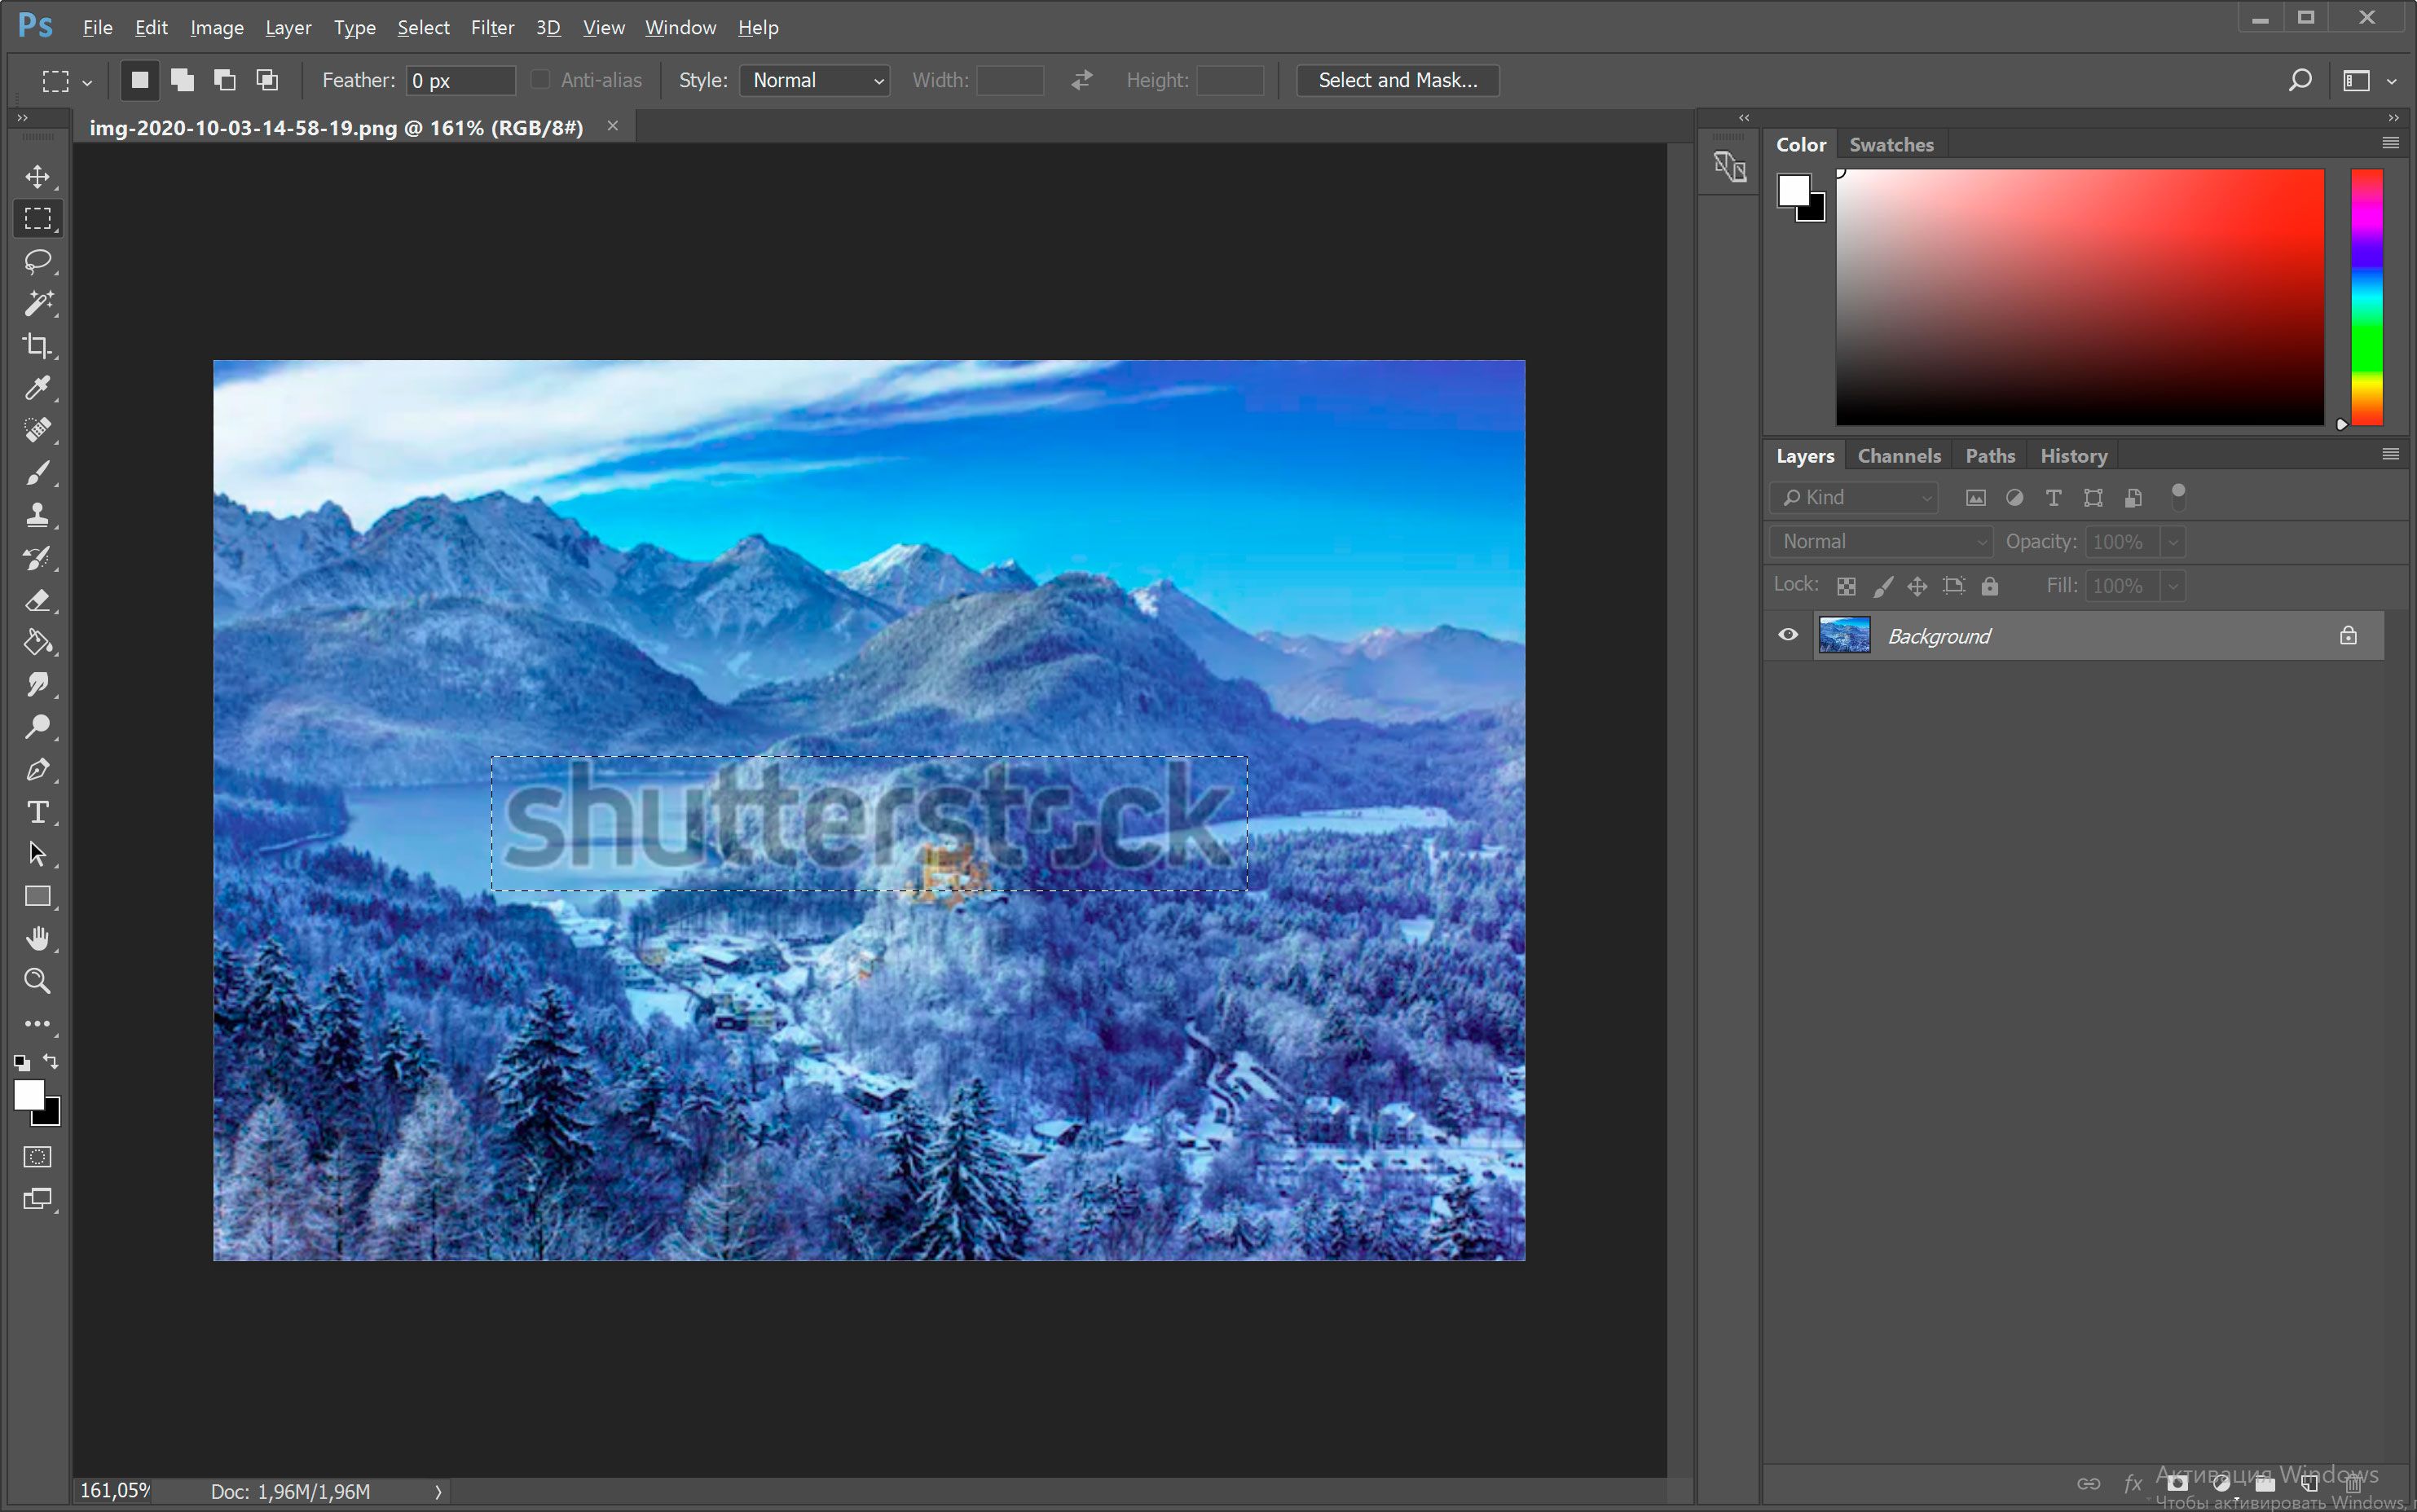 Öffnen Sie das Bild mit Shutterstock-Wasserzeichen in Photoshop..